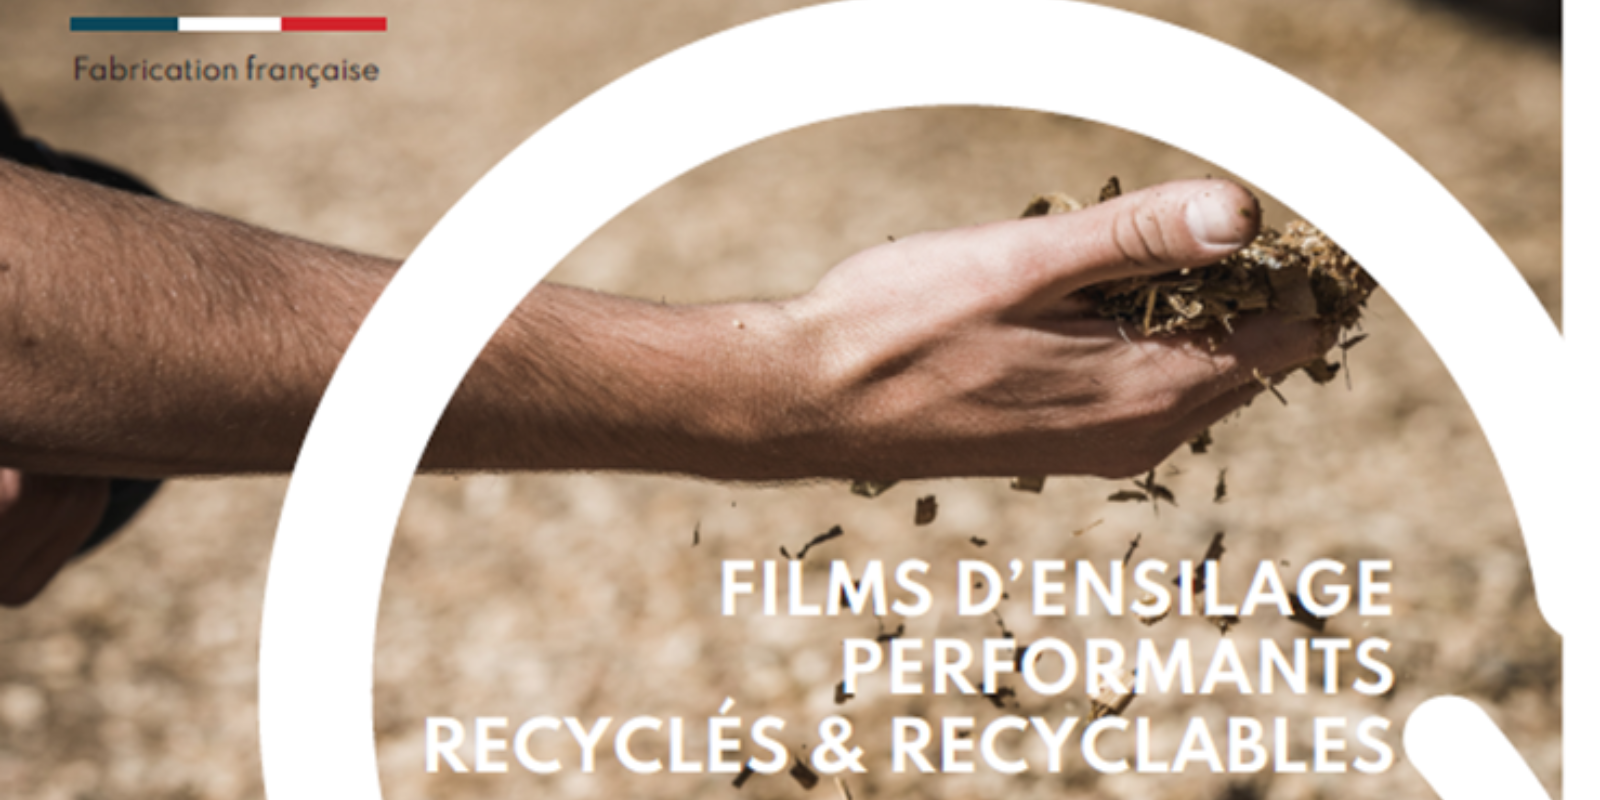 Triowold lance un film d\'ensilage en plastique recyclé et recyclable 